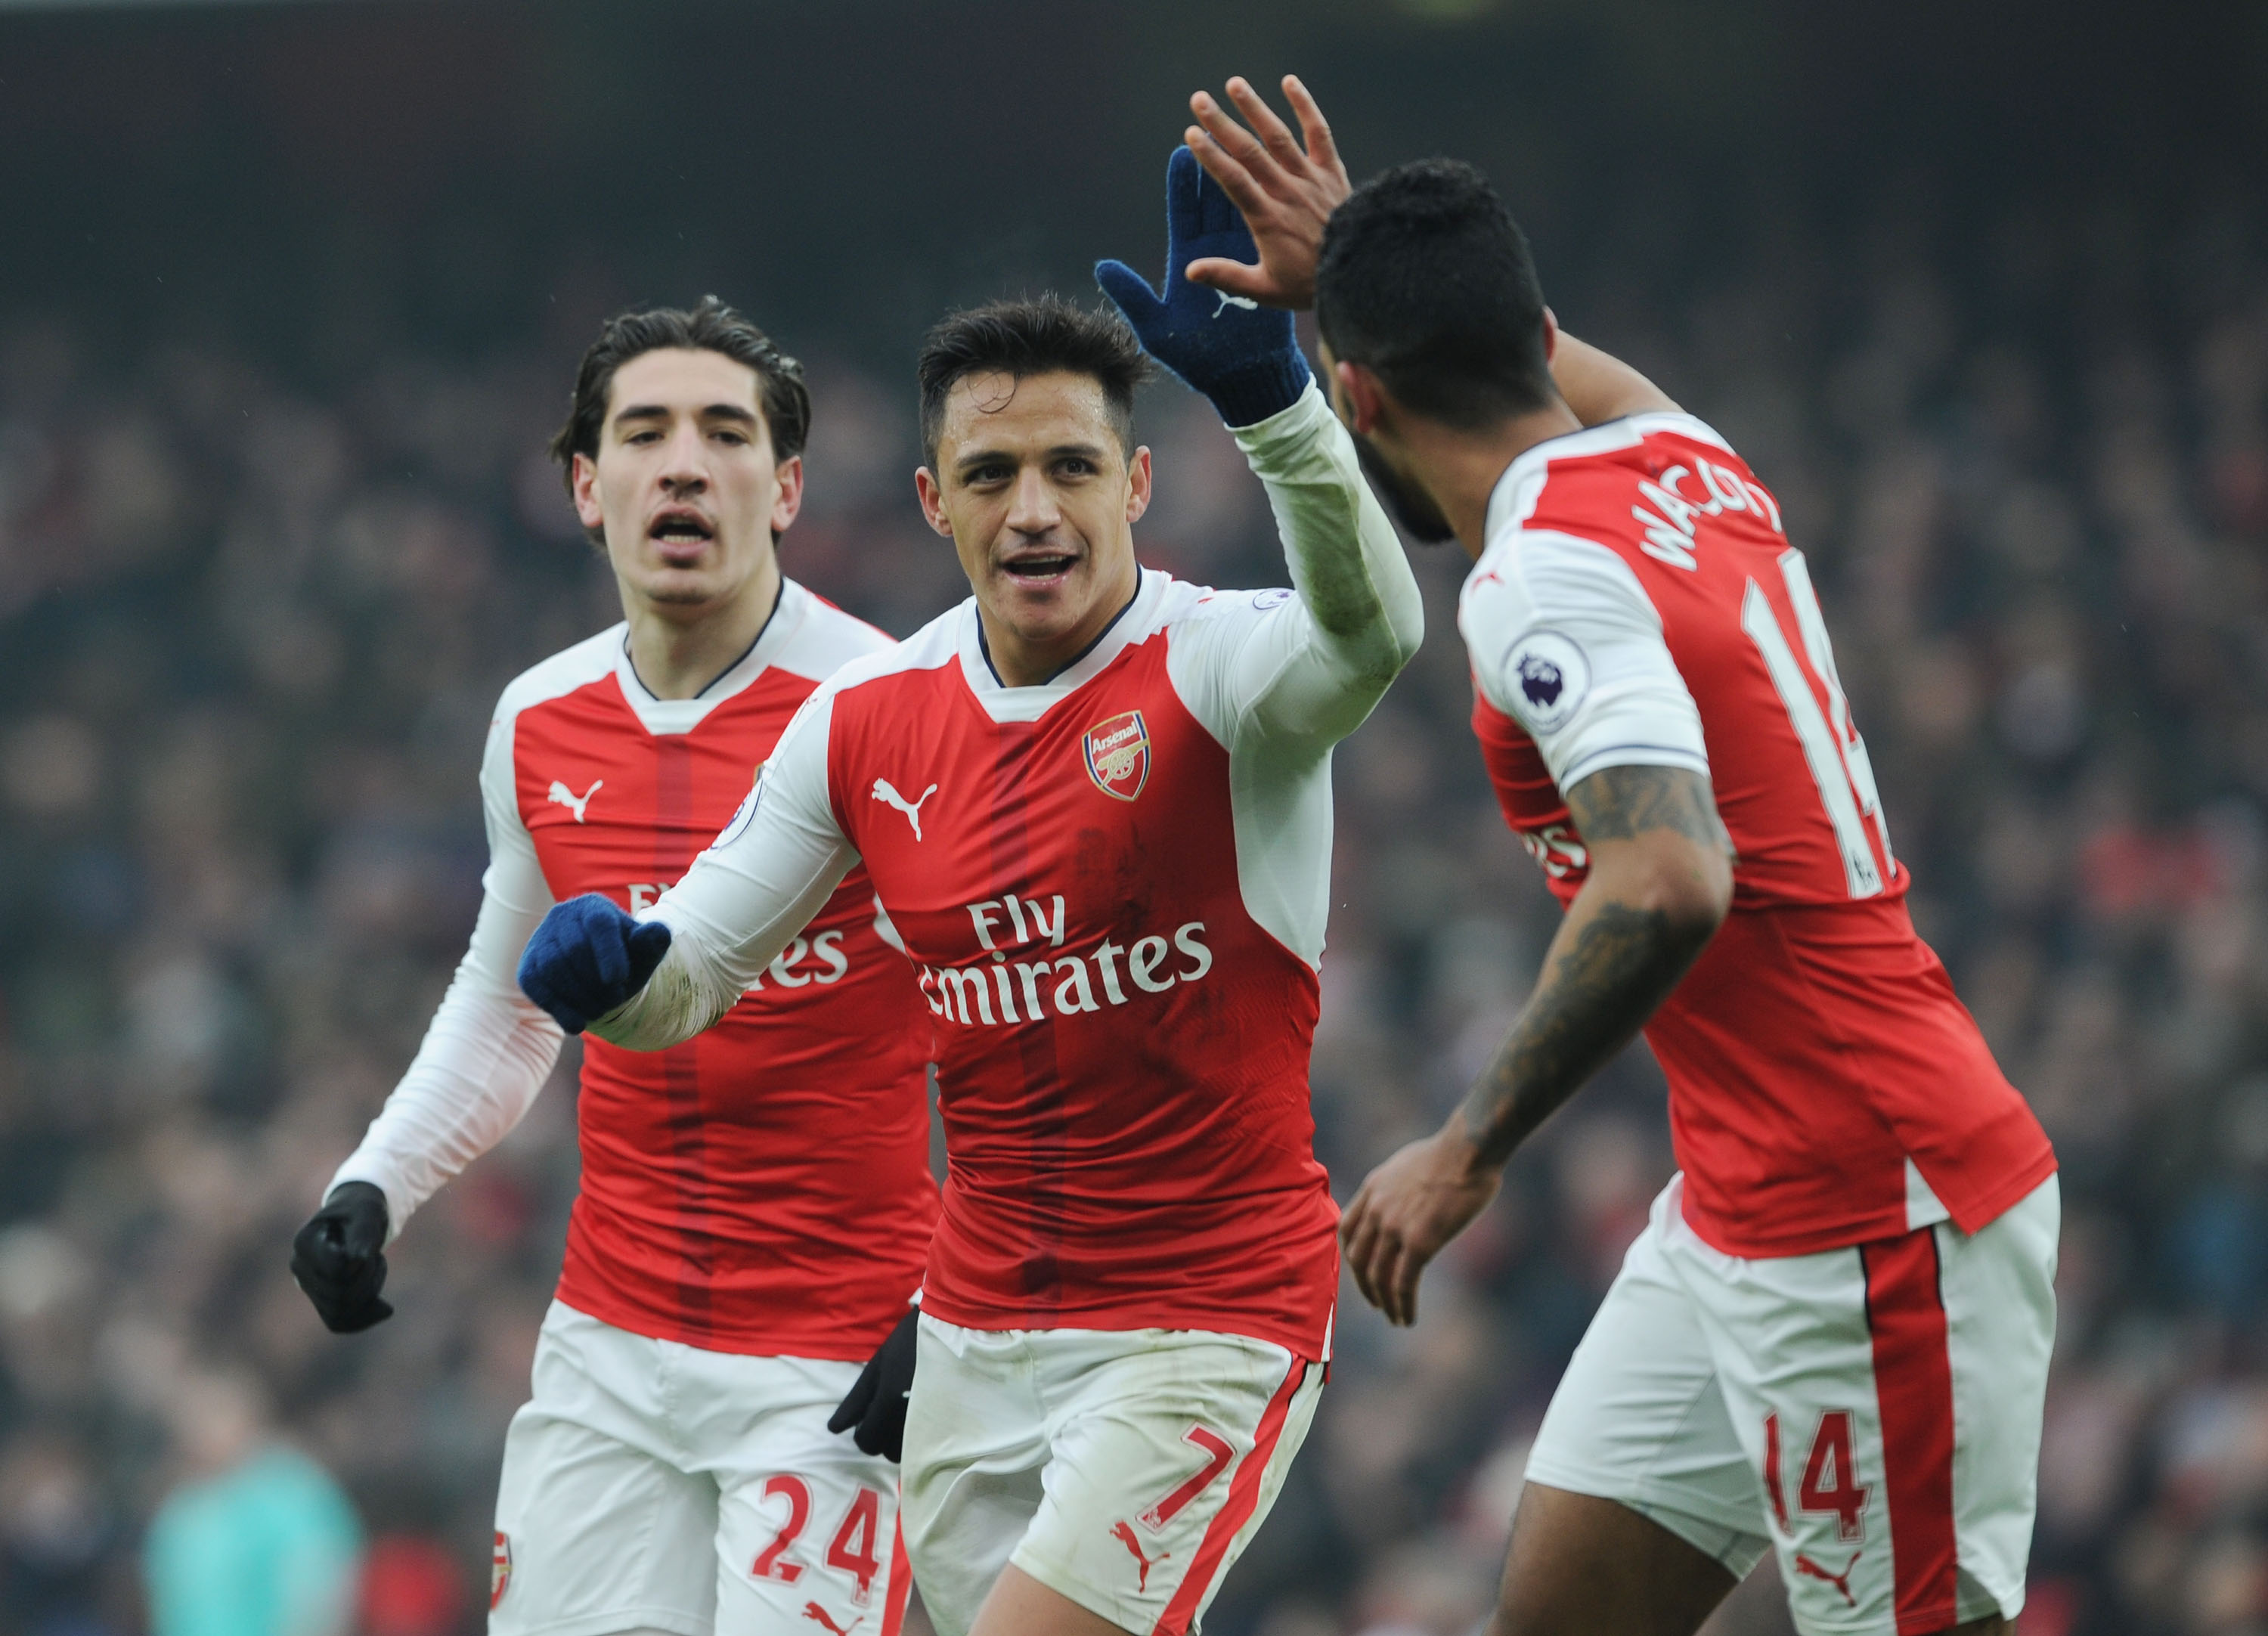 Alexis hráčem měsíce března - Arsenal FC Supporters Club